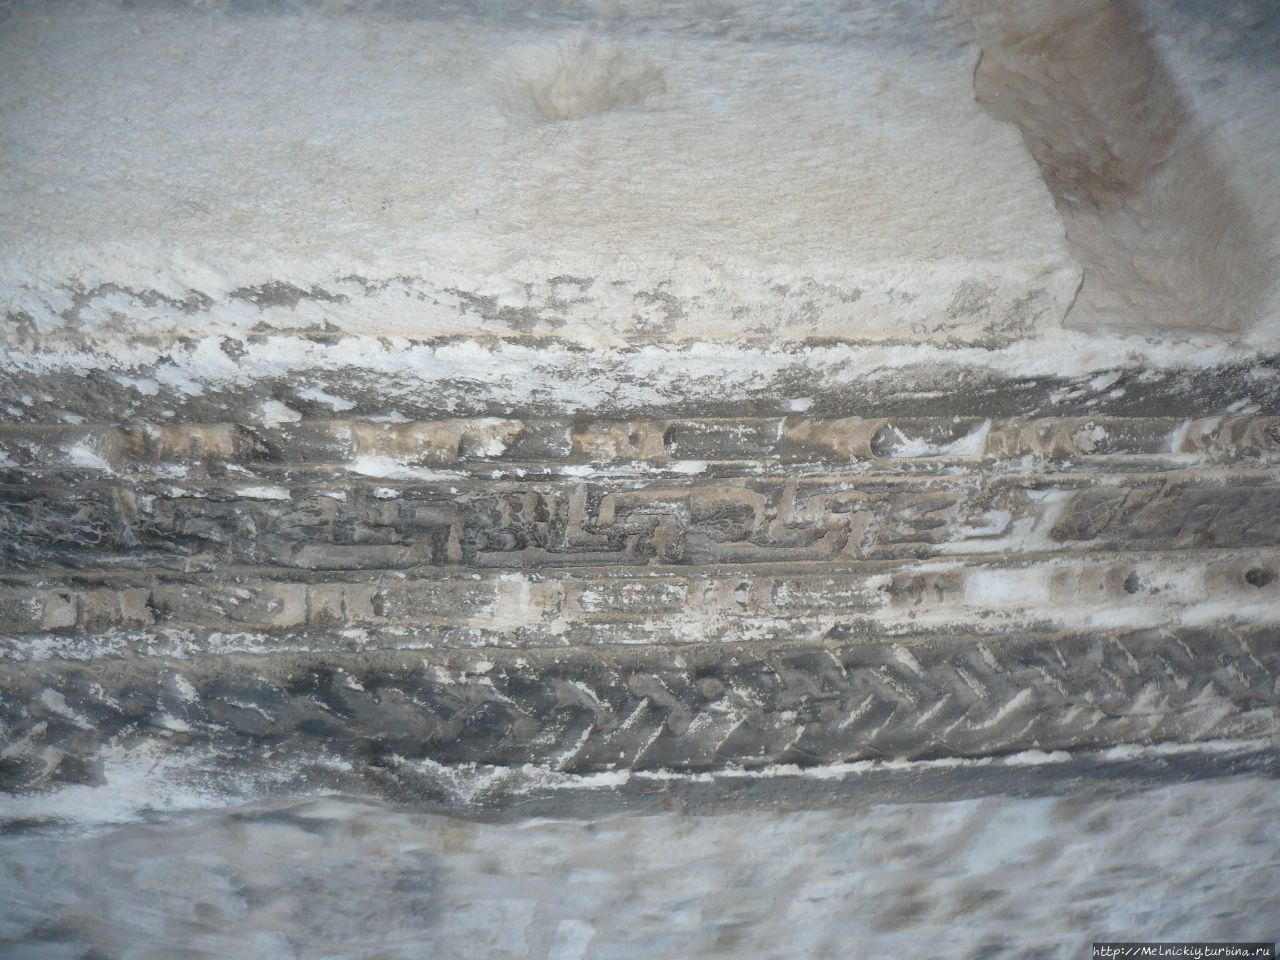 Перистиль дворца императора Диоклетиана Сплит, Хорватия